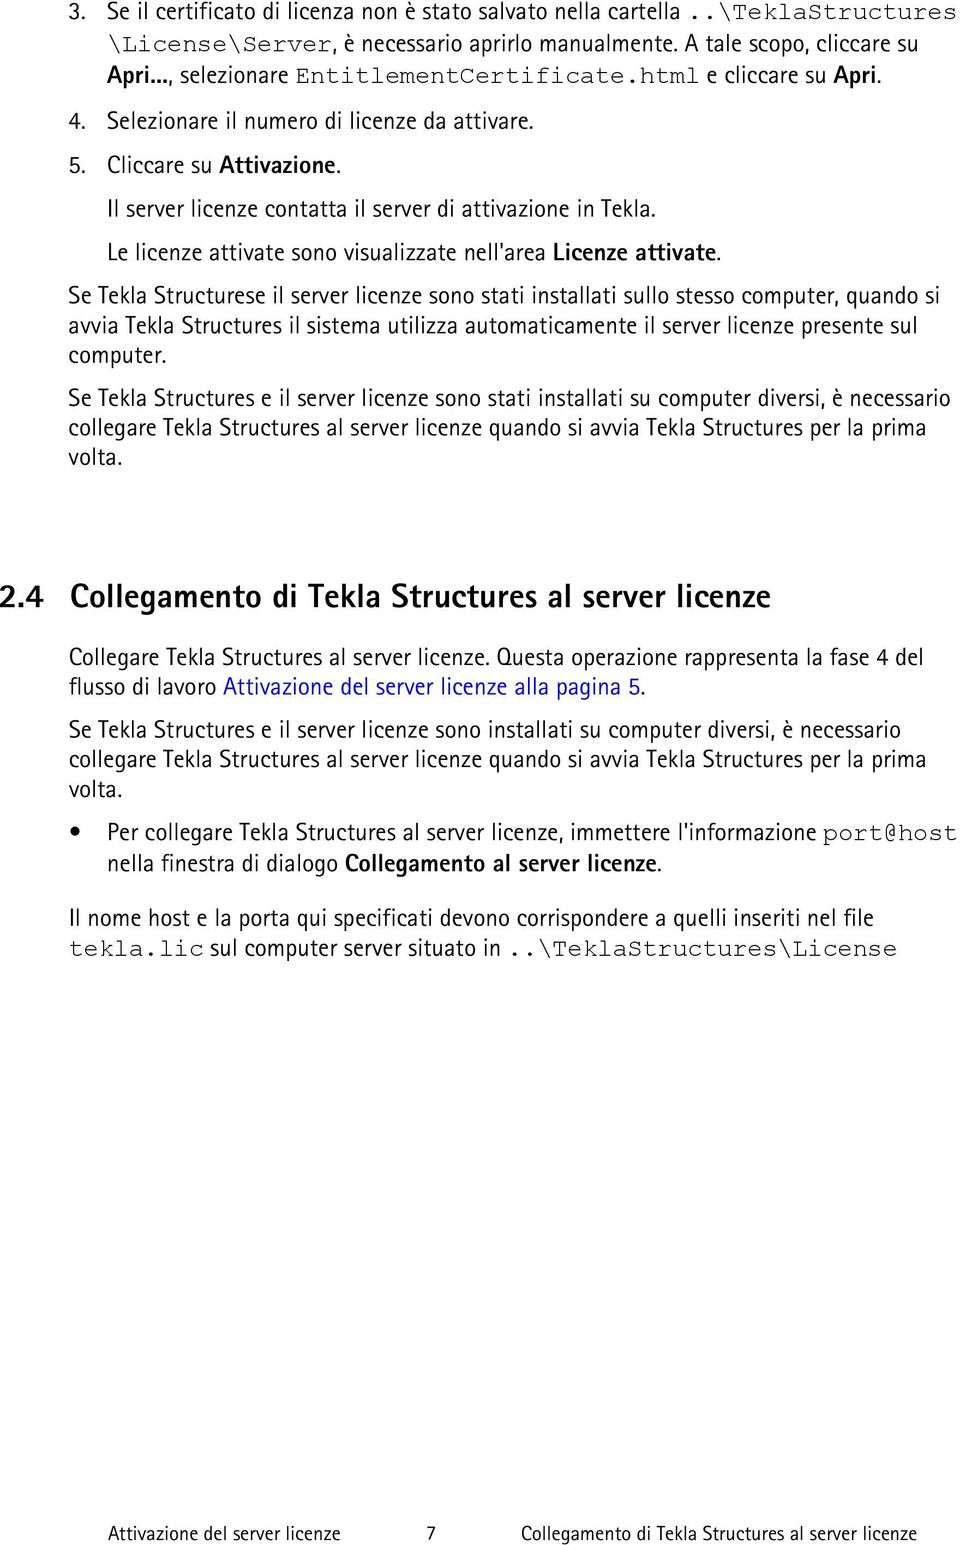 Il server licenze contatta il server di attivazione in Tekla. Le licenze attivate sono visualizzate nell'area Licenze attivate.